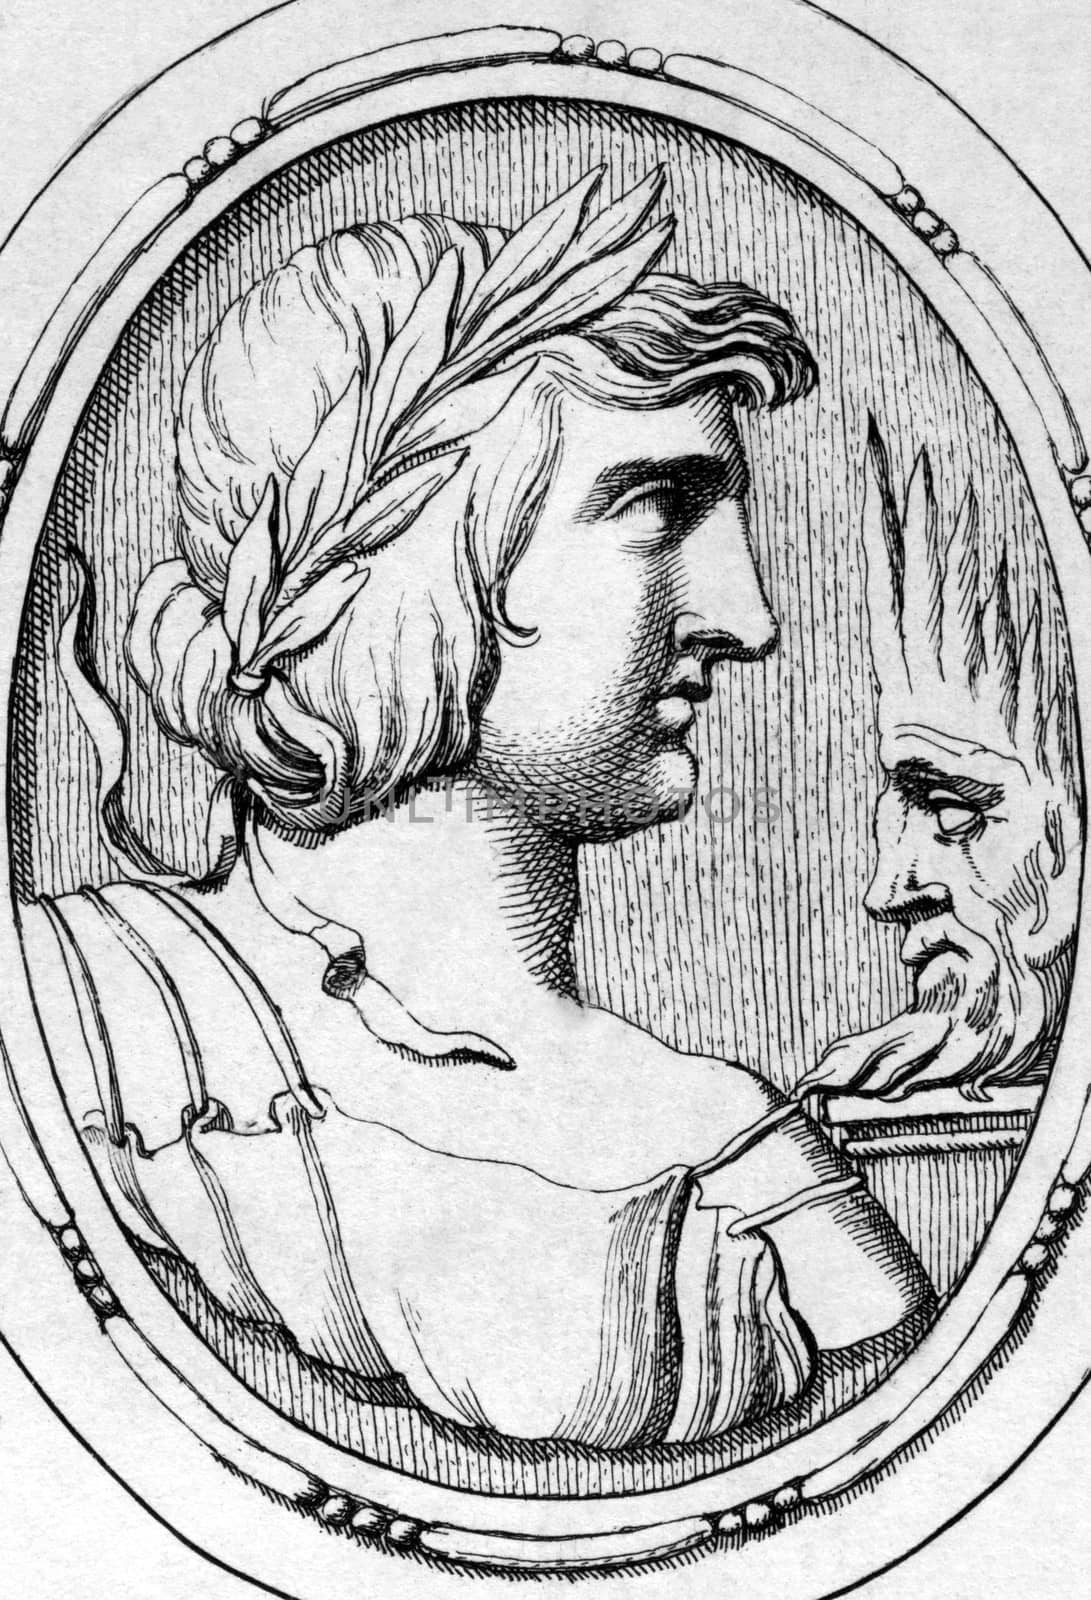 Publius Vergilius Maro (70BC-19BC) on engraving from 1685. Ancient Roman poet. Engraved by Leonardo Agostini and published in Gemmae et Sculpturae Antiquae Depictae,Italy,1685.